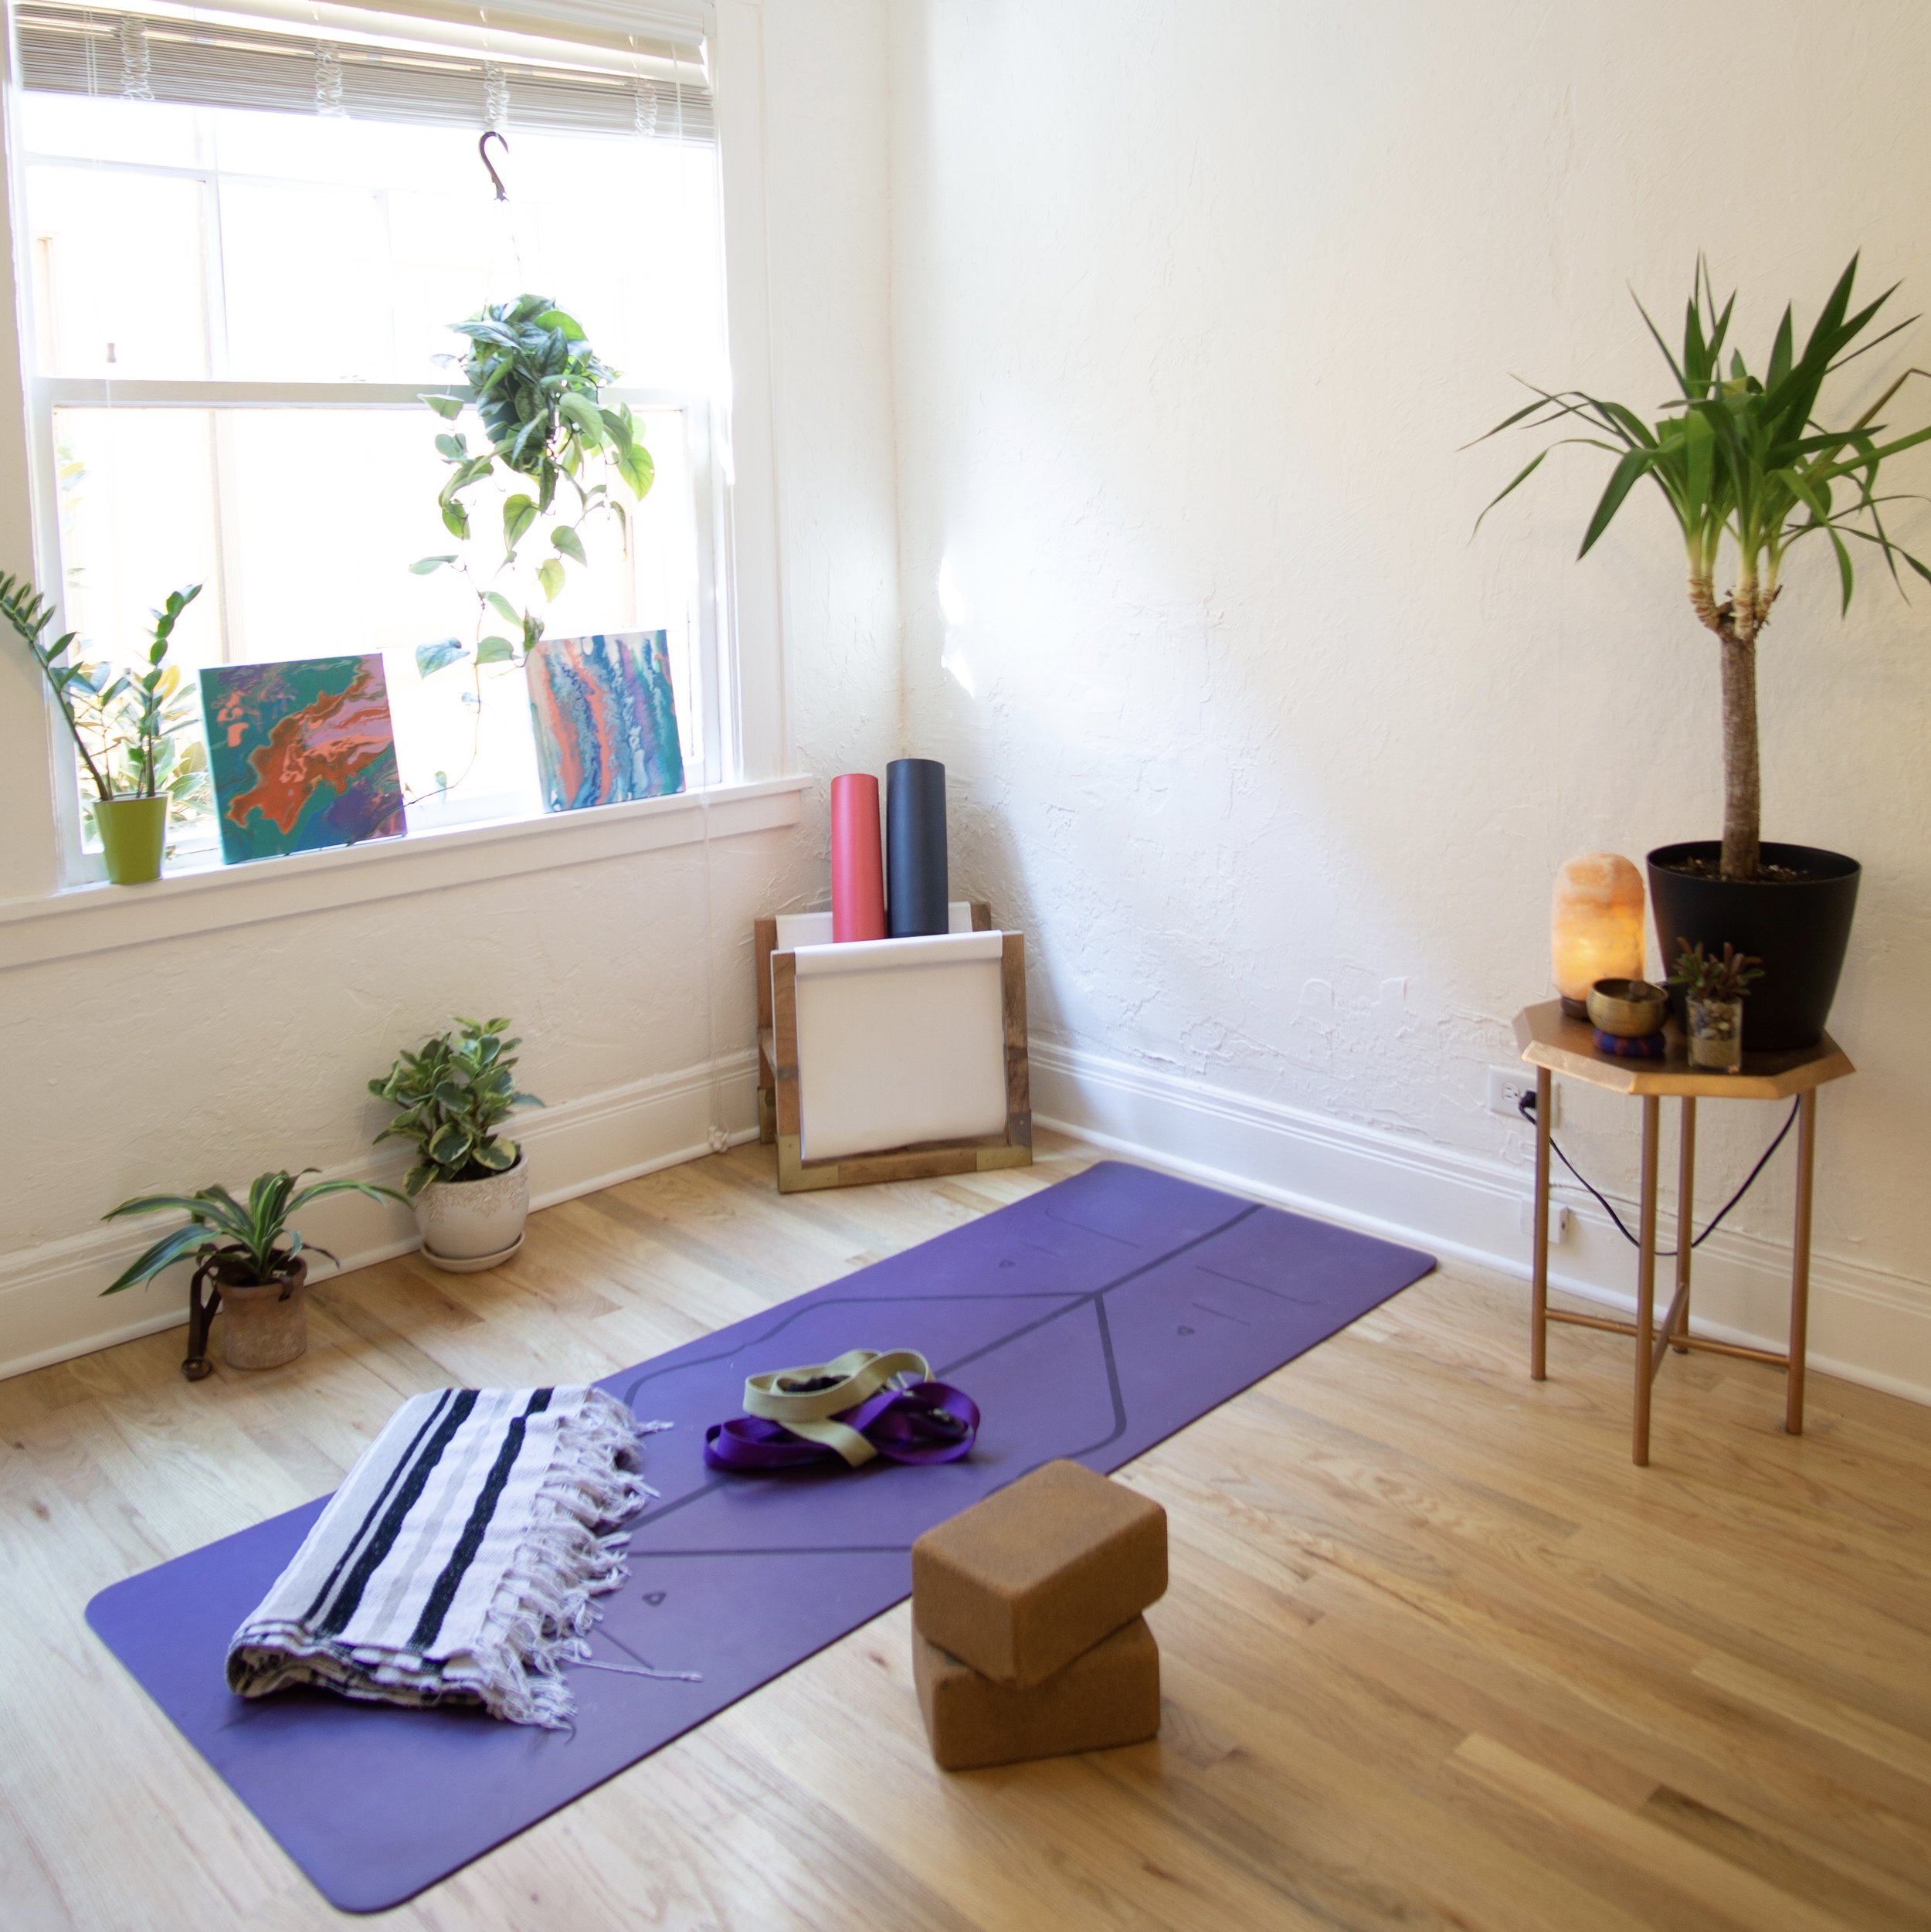 Home Yoga Studio - Zen Decor - NJ Homes